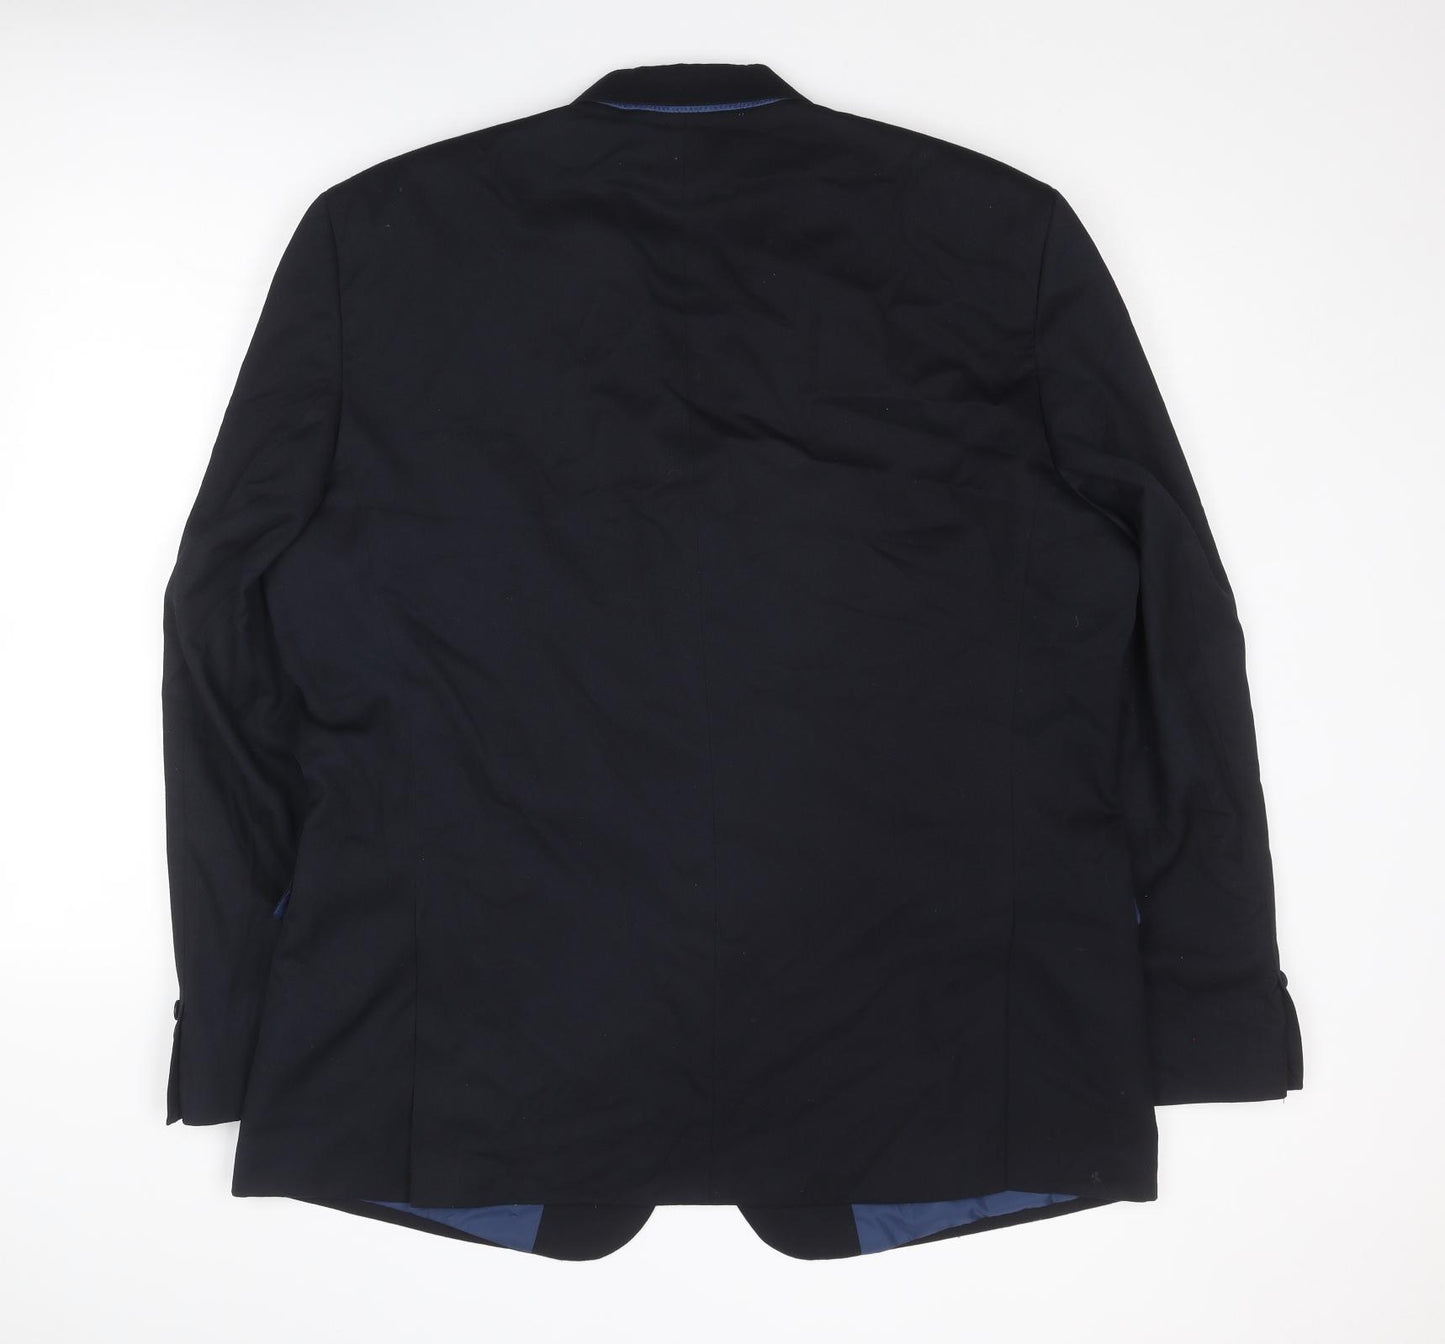 Marks and Spencer Mens Blue Polyester Jacket Suit Jacket Size 48 Regular